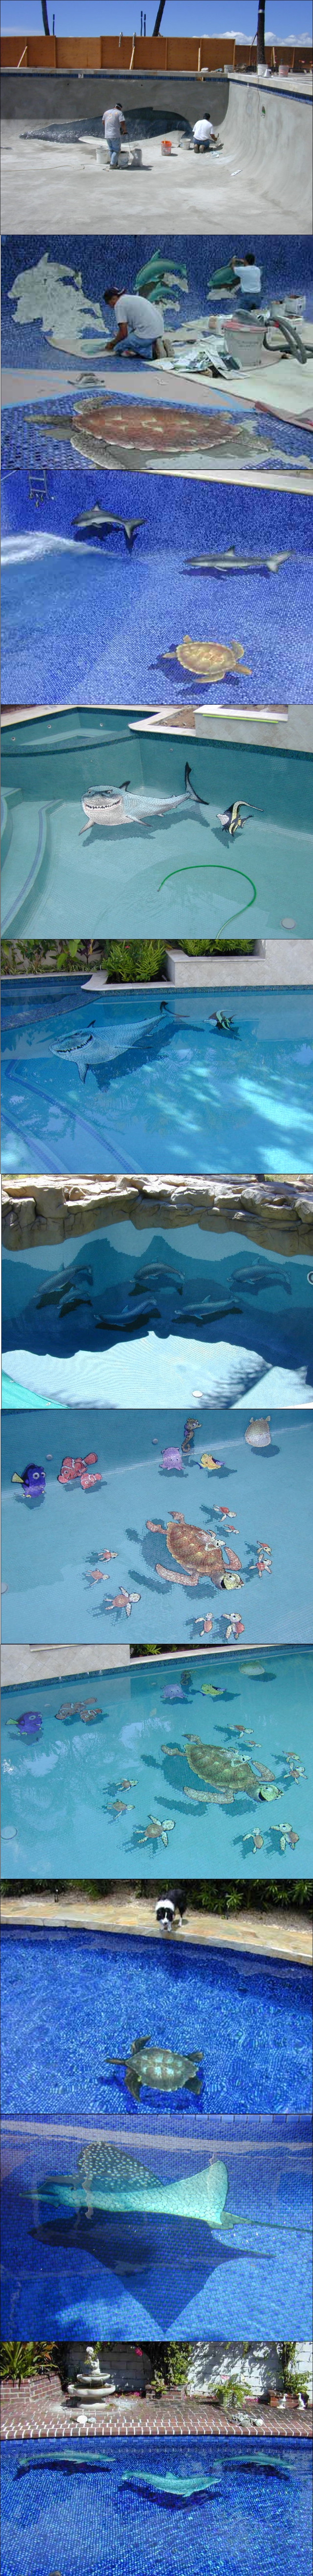 Comment nager avec des dauphins (et autres) dans sa piscine